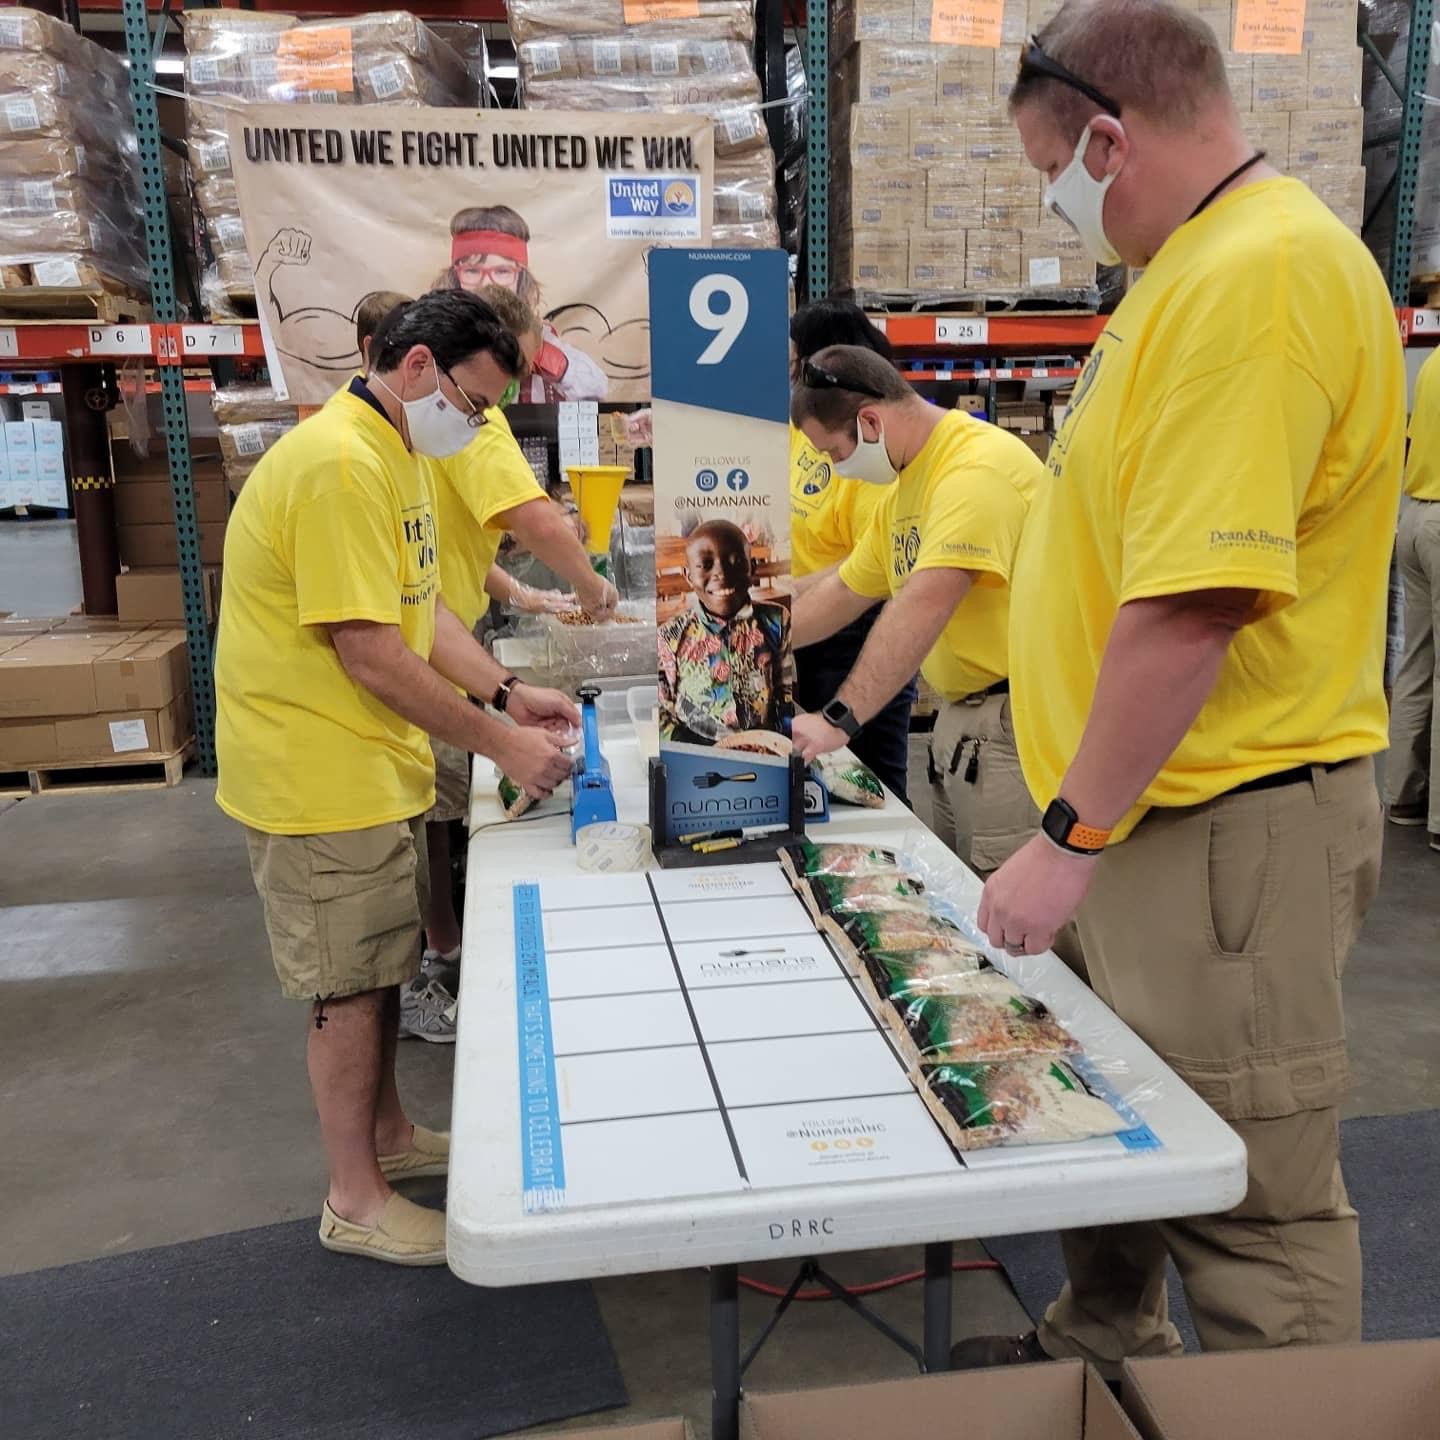 Volunteers packing food